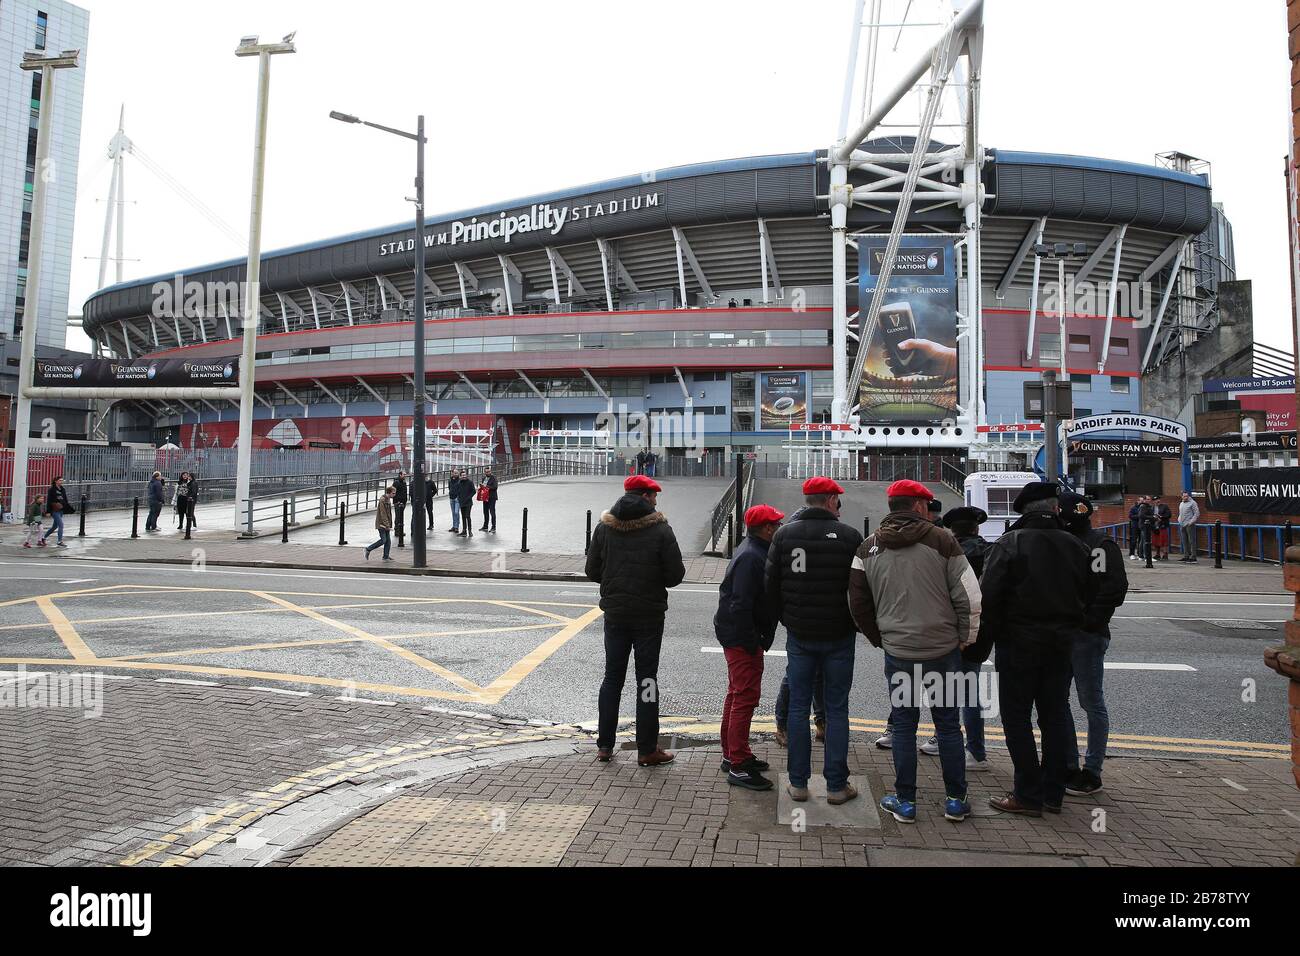 Cardiff, Großbritannien. März 2020. Rugby-Fans außerhalb des Fürstenstadions in Cardiff, Südwales am Samstag, den 14. März 2020. Sie hätten im Stadion das Spiel der sechs Nationen von Wales gegen Schottland gesehen, das gestern wegen der Situation des Coronavirus abgesagt wurde. PIC von Andrew Orchard/Alamy Live News Stockfoto